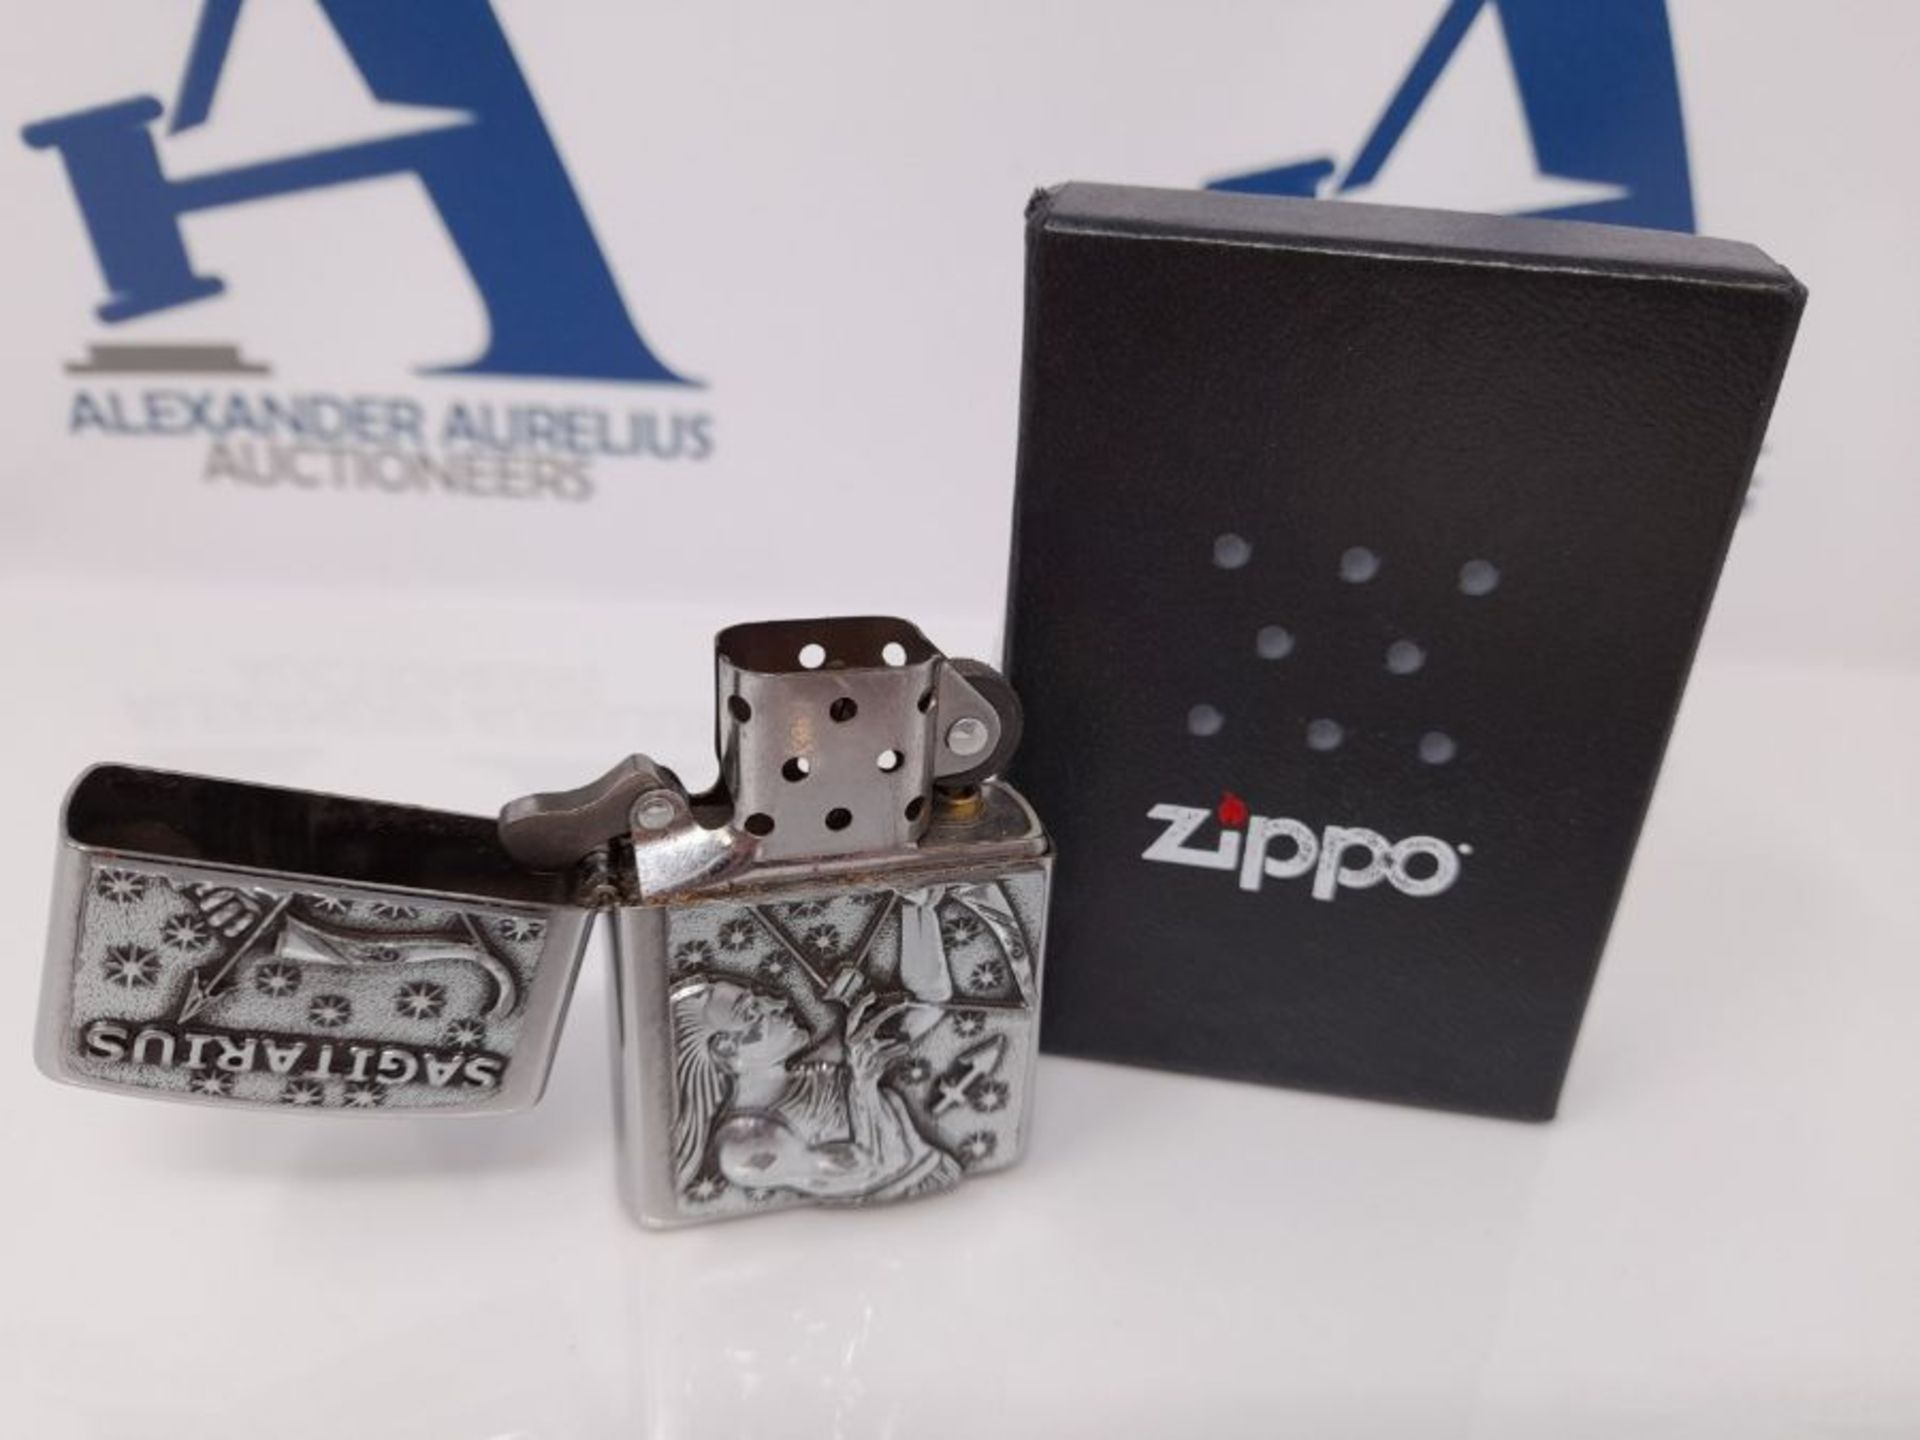 Zippo Lighter, Brass, Design, 5,83,81,2 - Image 2 of 3